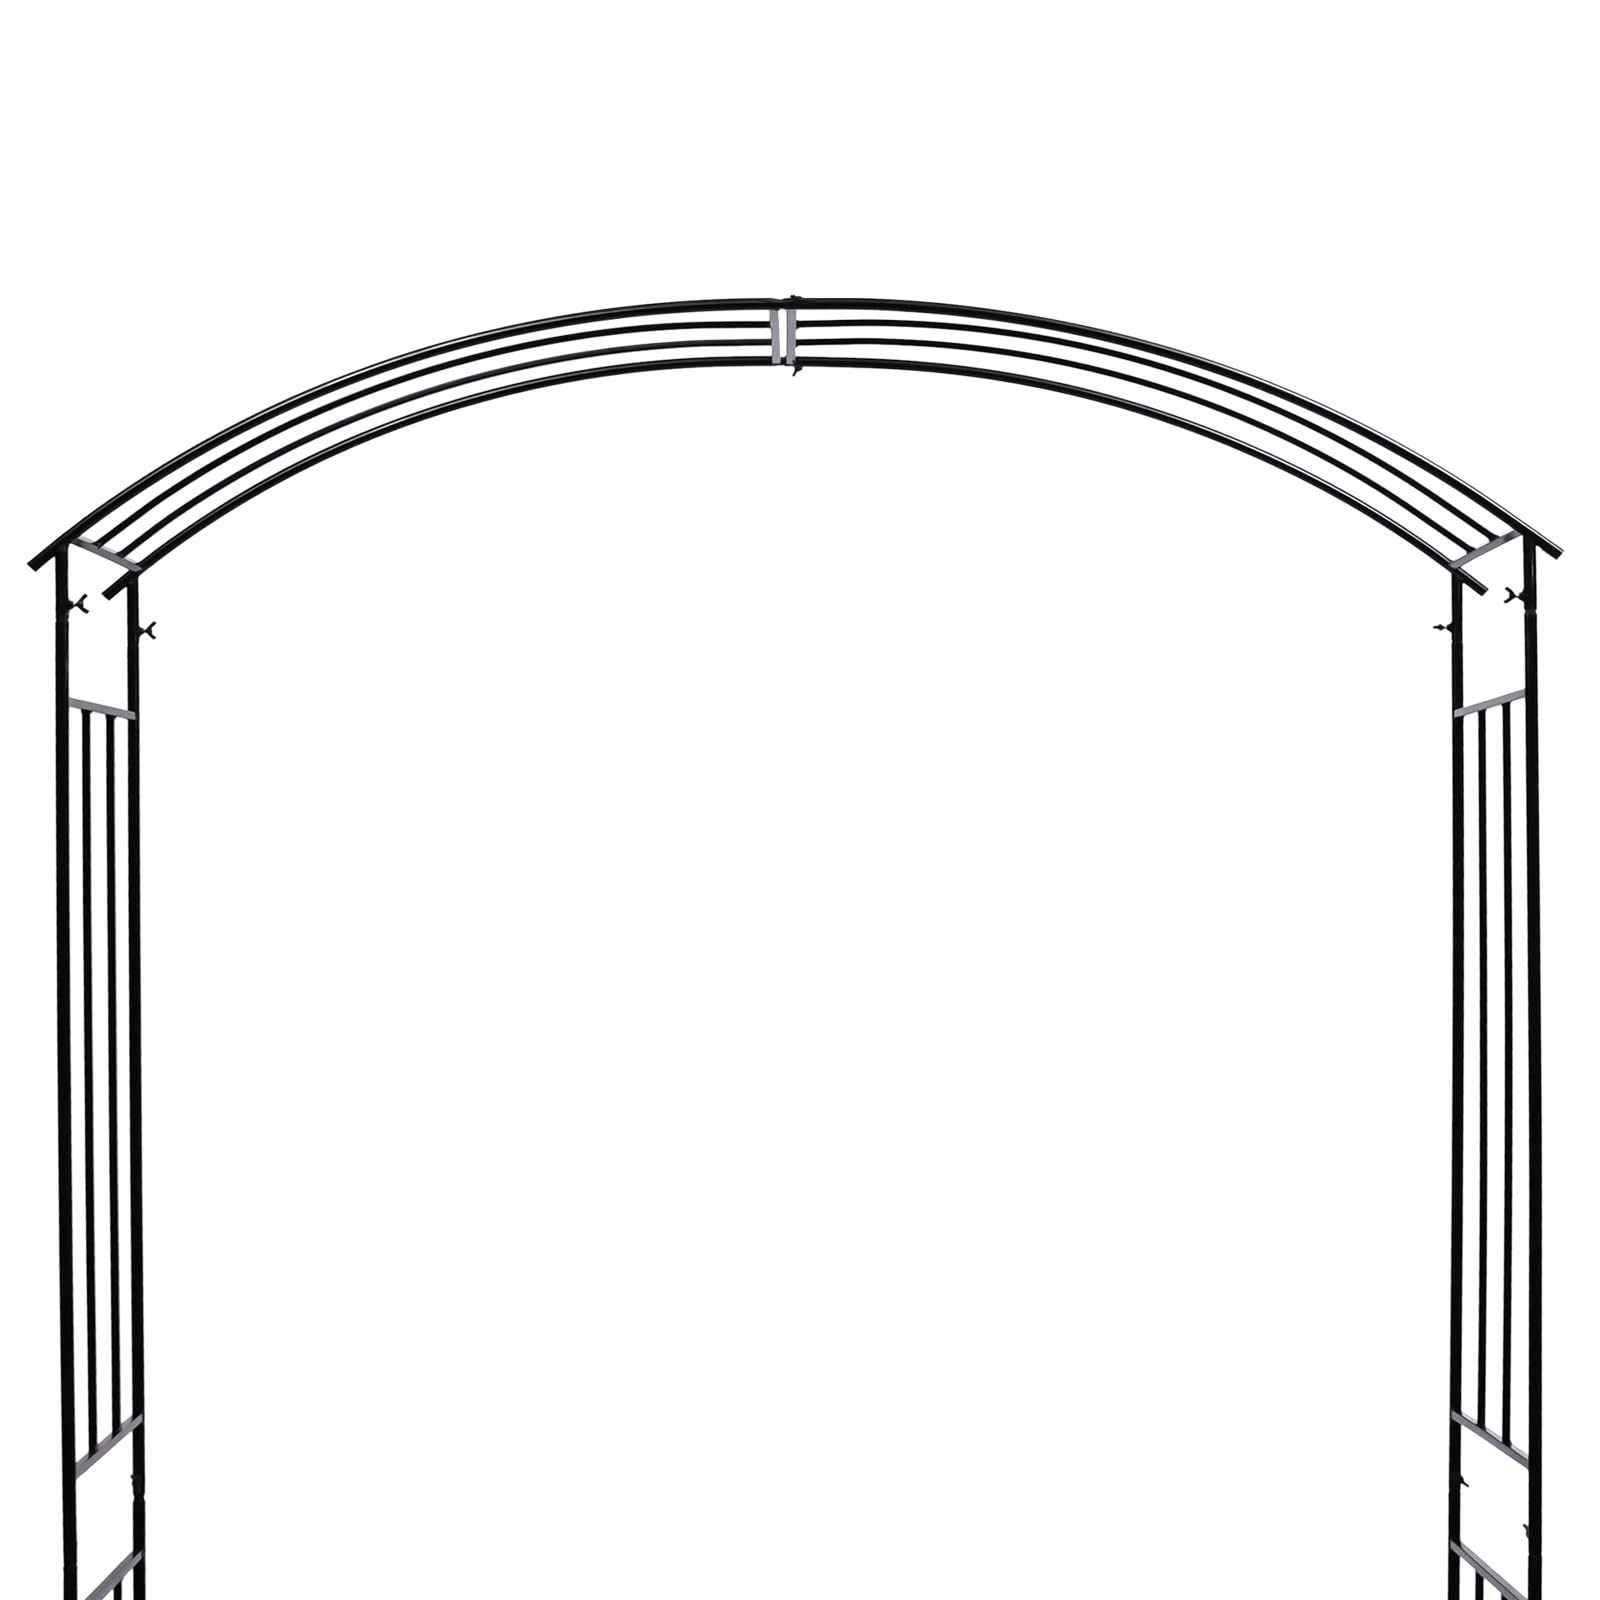 Arche de jardin rectangulaire en métal résistant aux intempéries